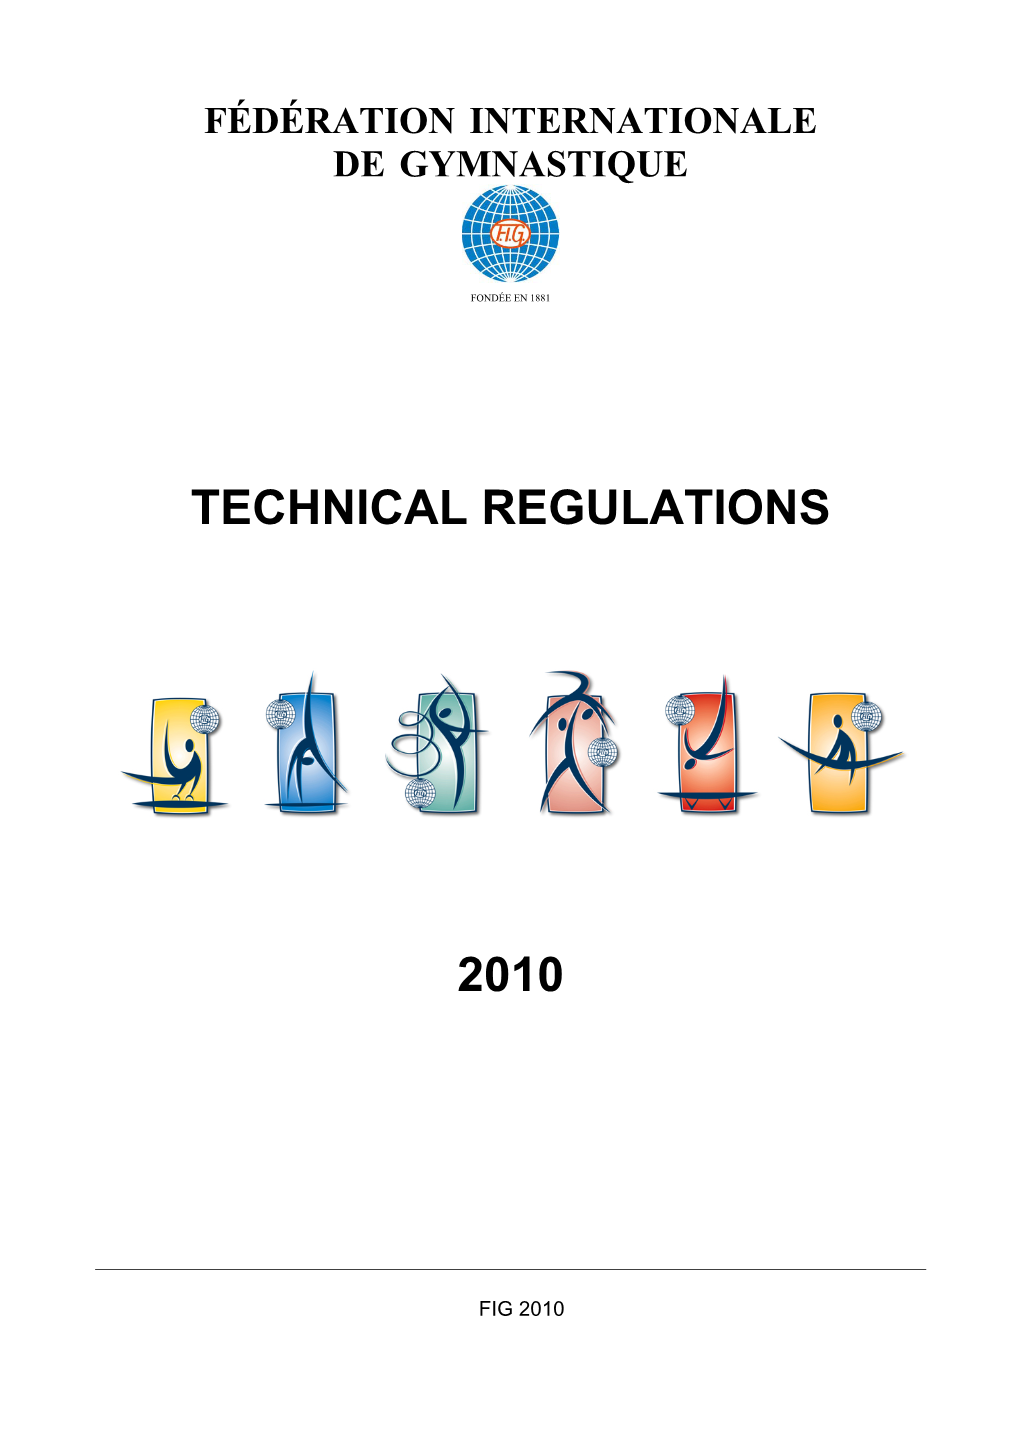 TECHNICAL REGULATIONS 2010 - INDEX December 2009 - II